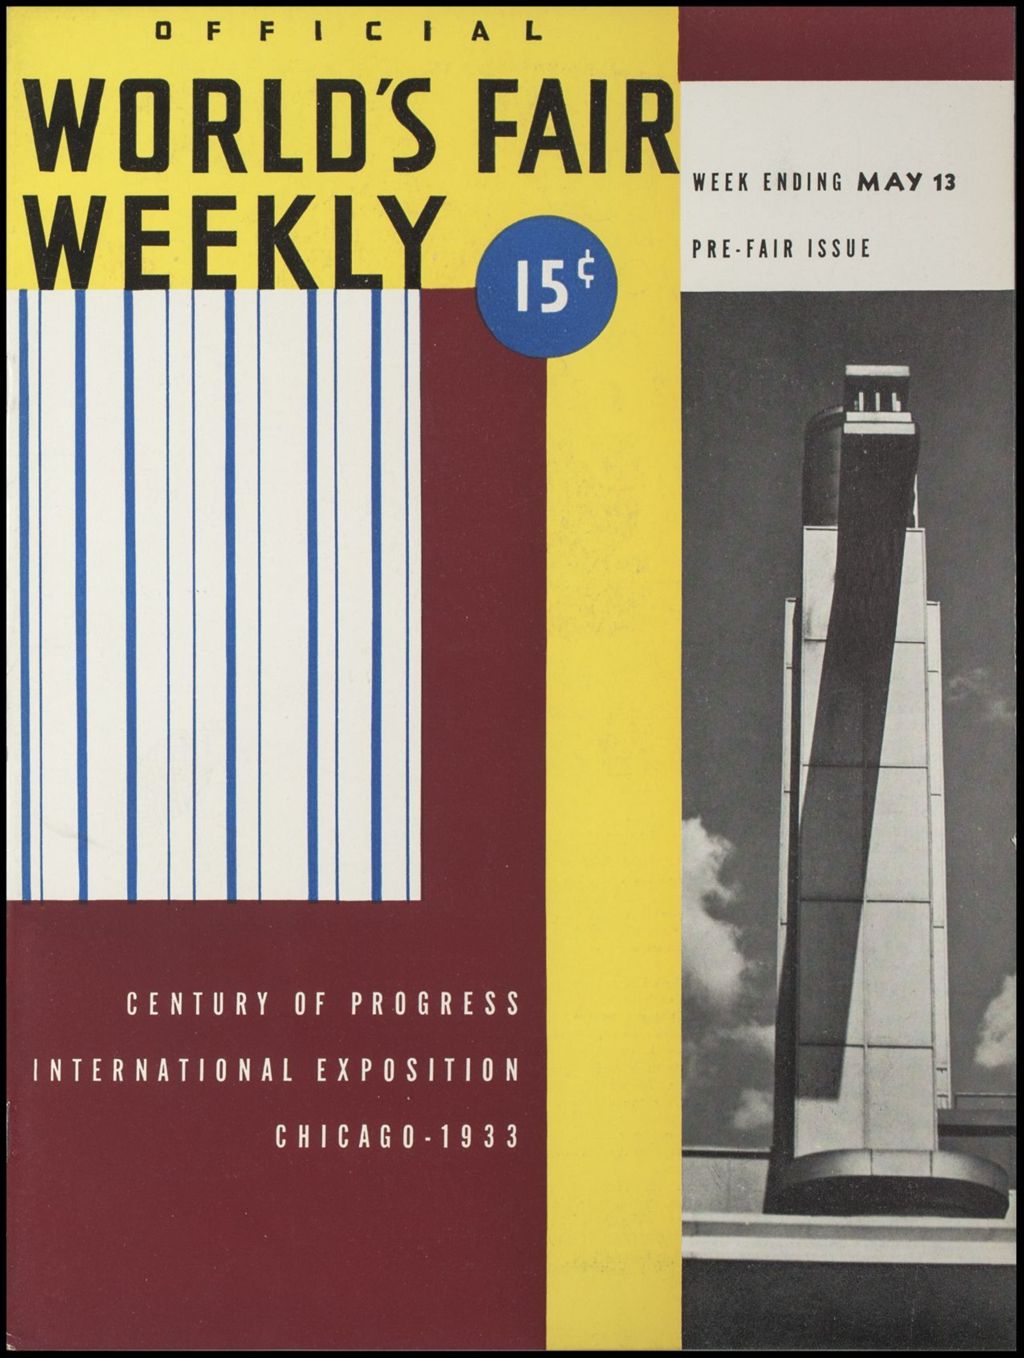 World's Fair Weekly, Week Ending May 13, 1933